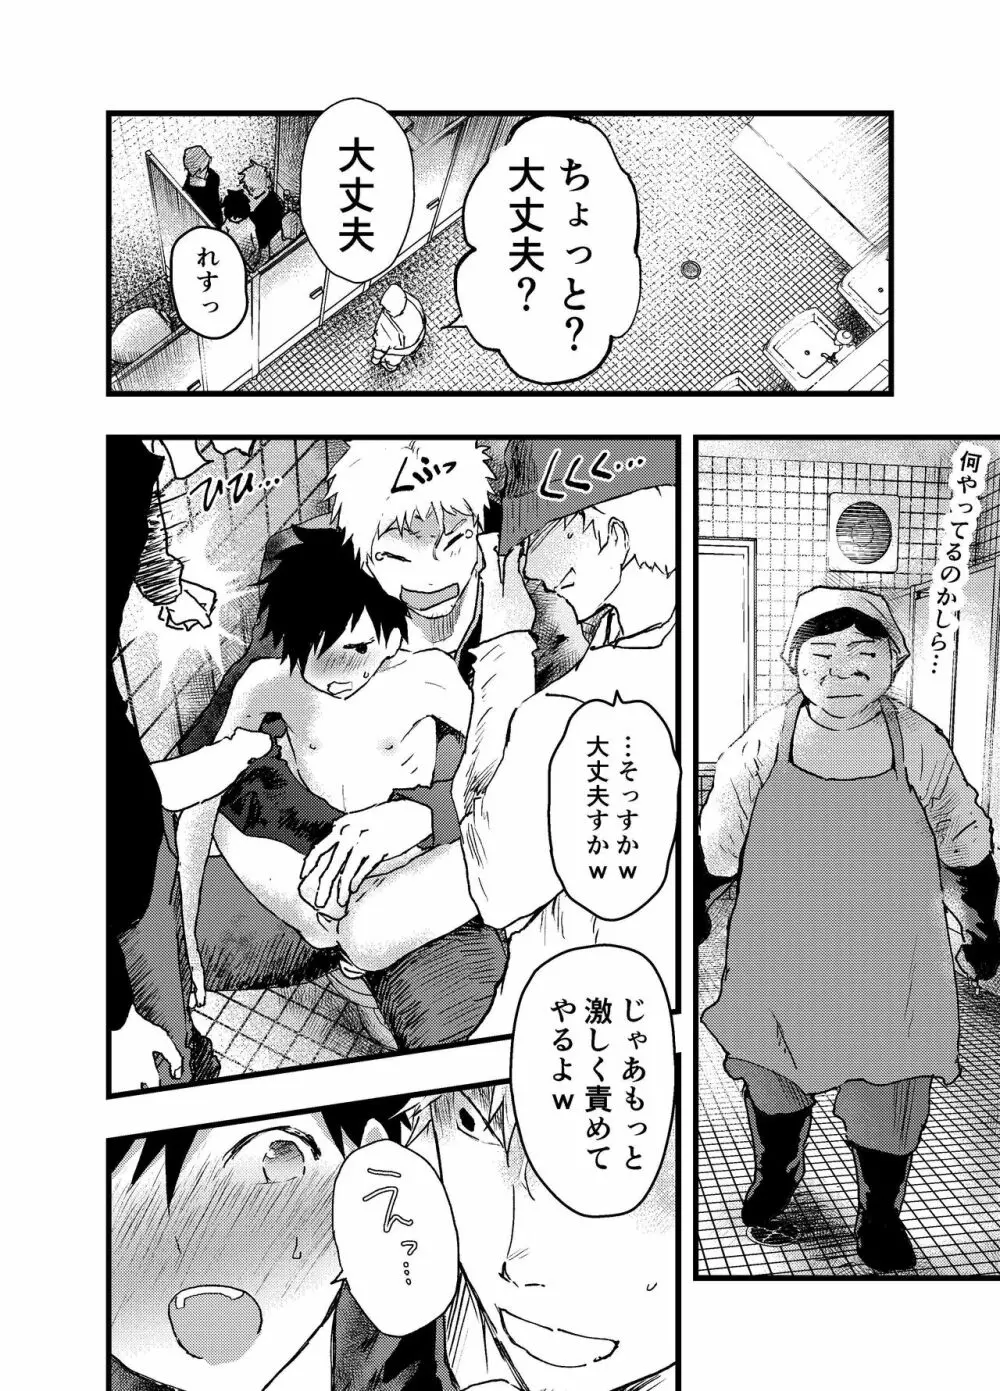 駅のトイレで初体験 輪姦レイプ!!鬼畜責め!! - page50